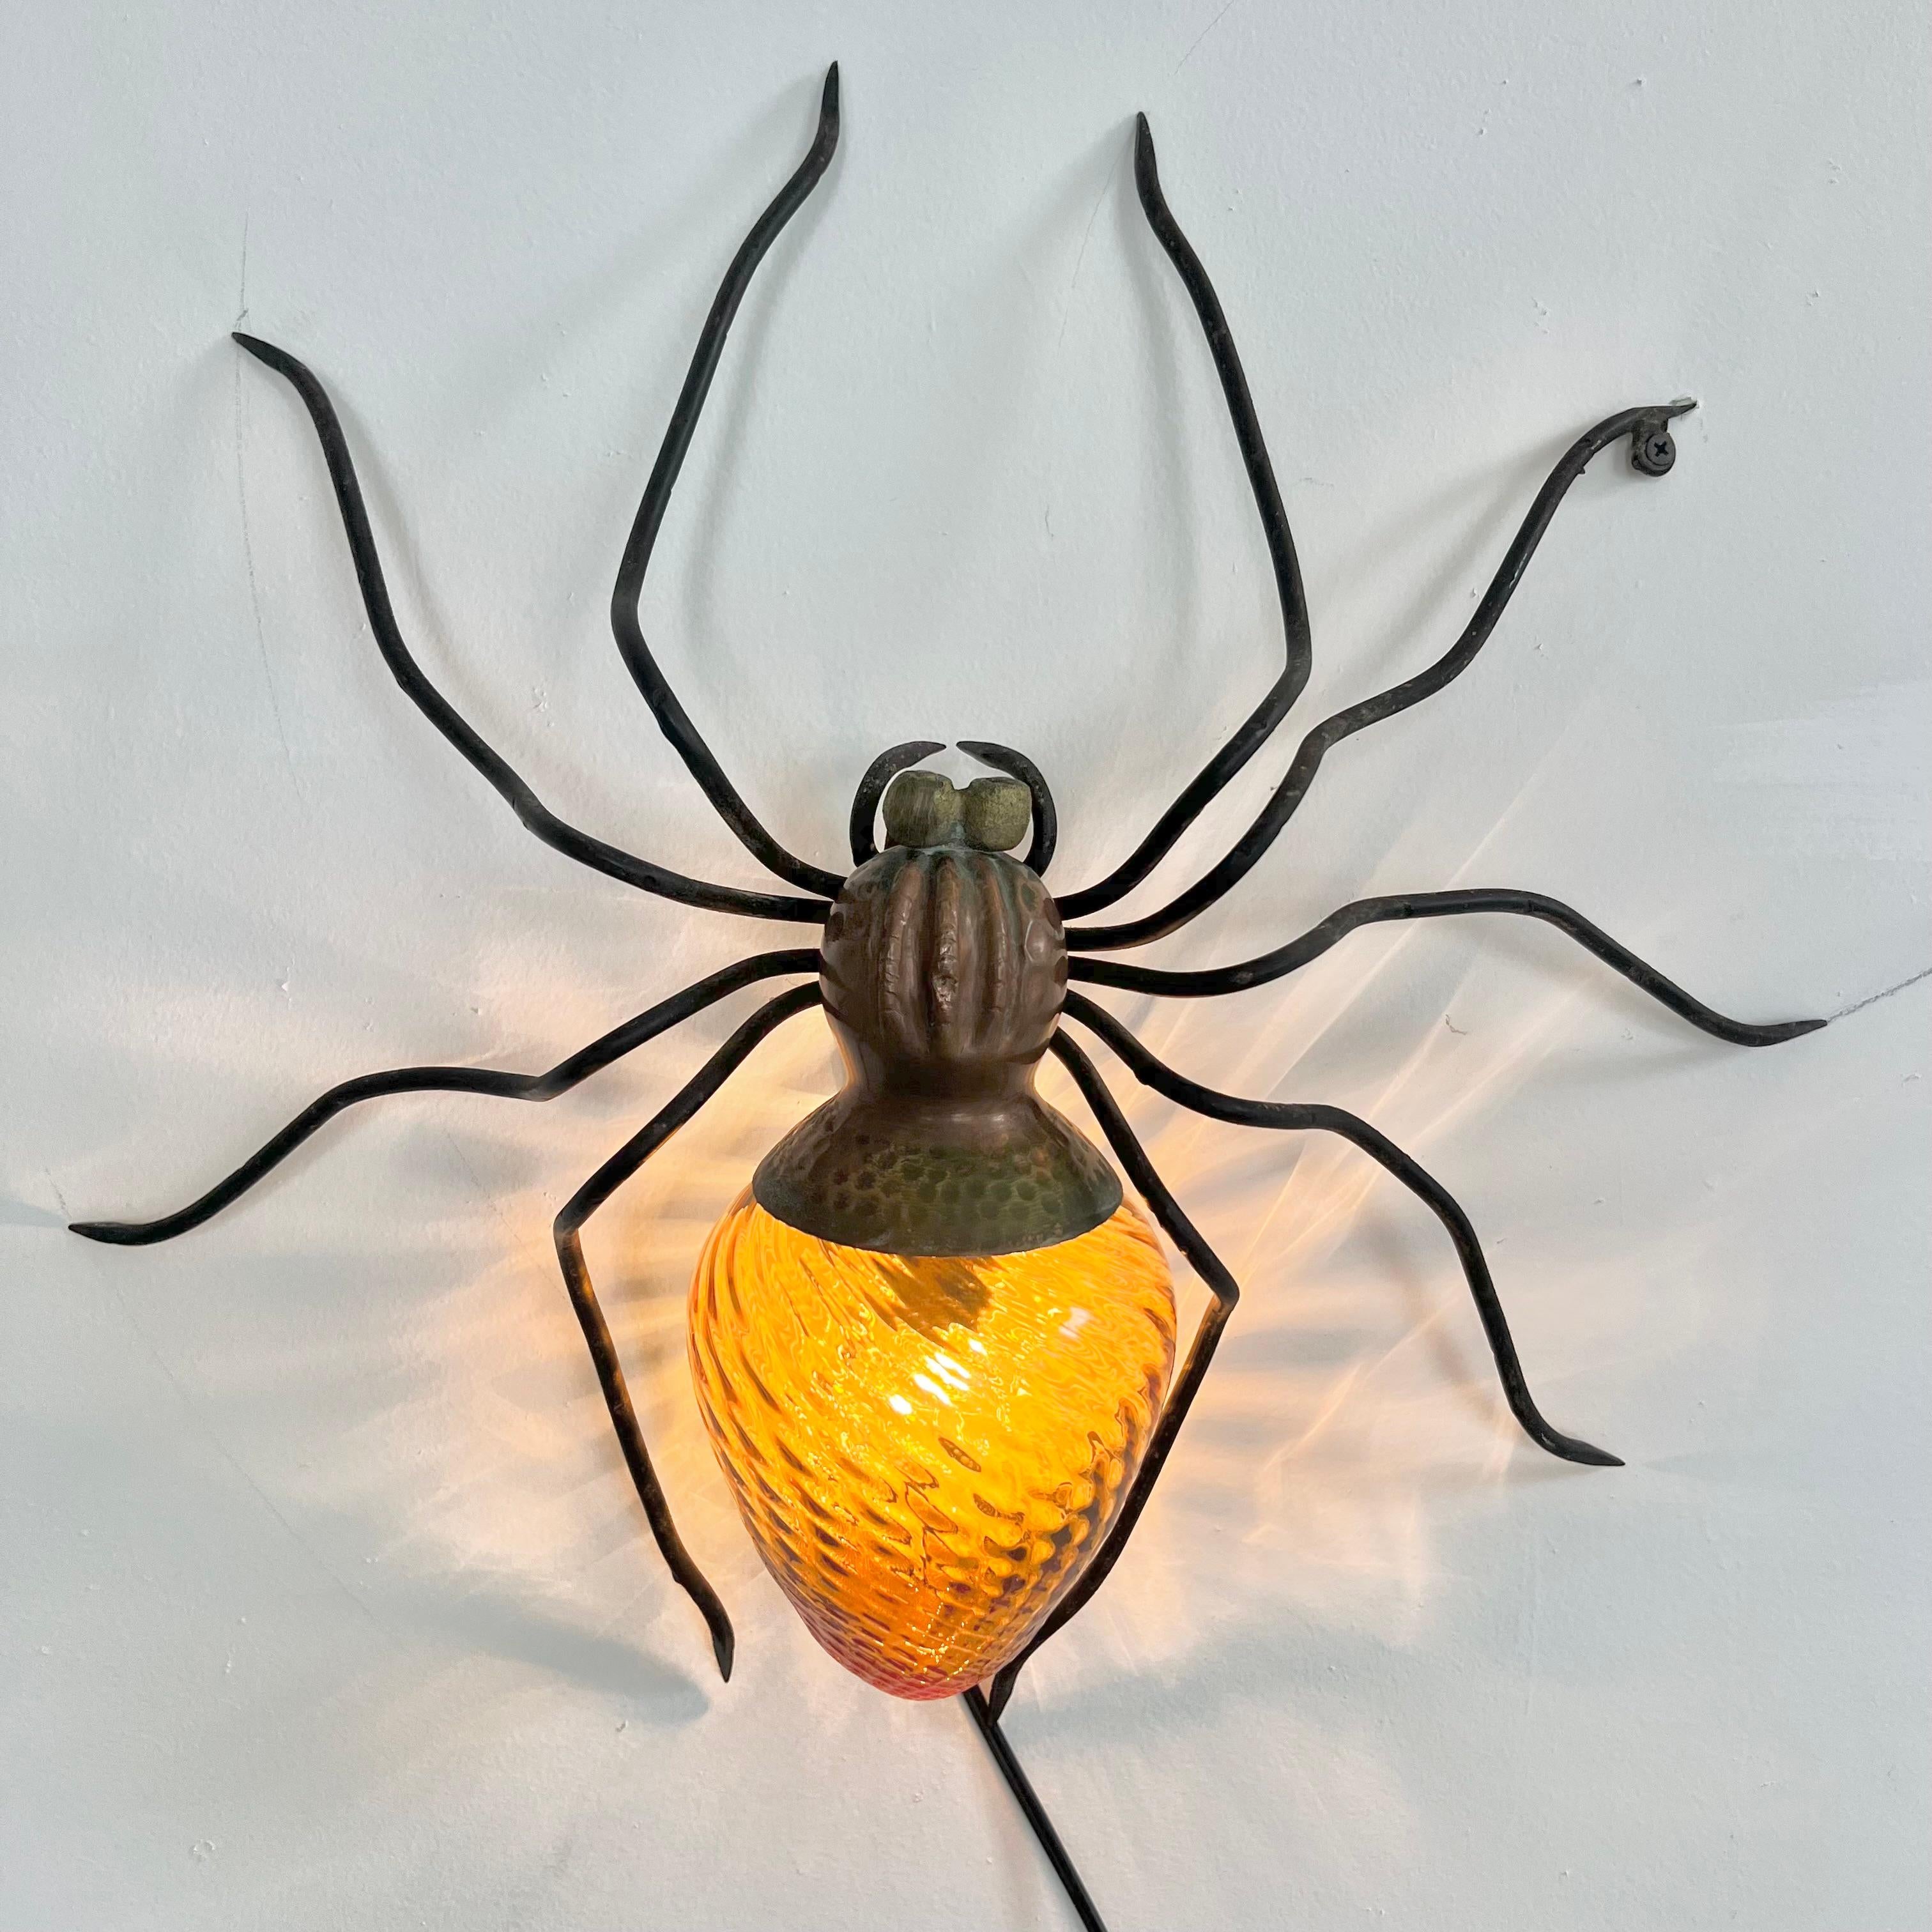 Einzigartige Spinnenleuchte aus Kupfer und Metall, handgefertigt in Italien. Große Präsenz und Detailtreue. Gehämmerter Kupferkörper mit schwarzem Kopf und schlanken, langen Beinen. Der Bauch ist eine wunderschöne Bernsteinglaskugel mit einem